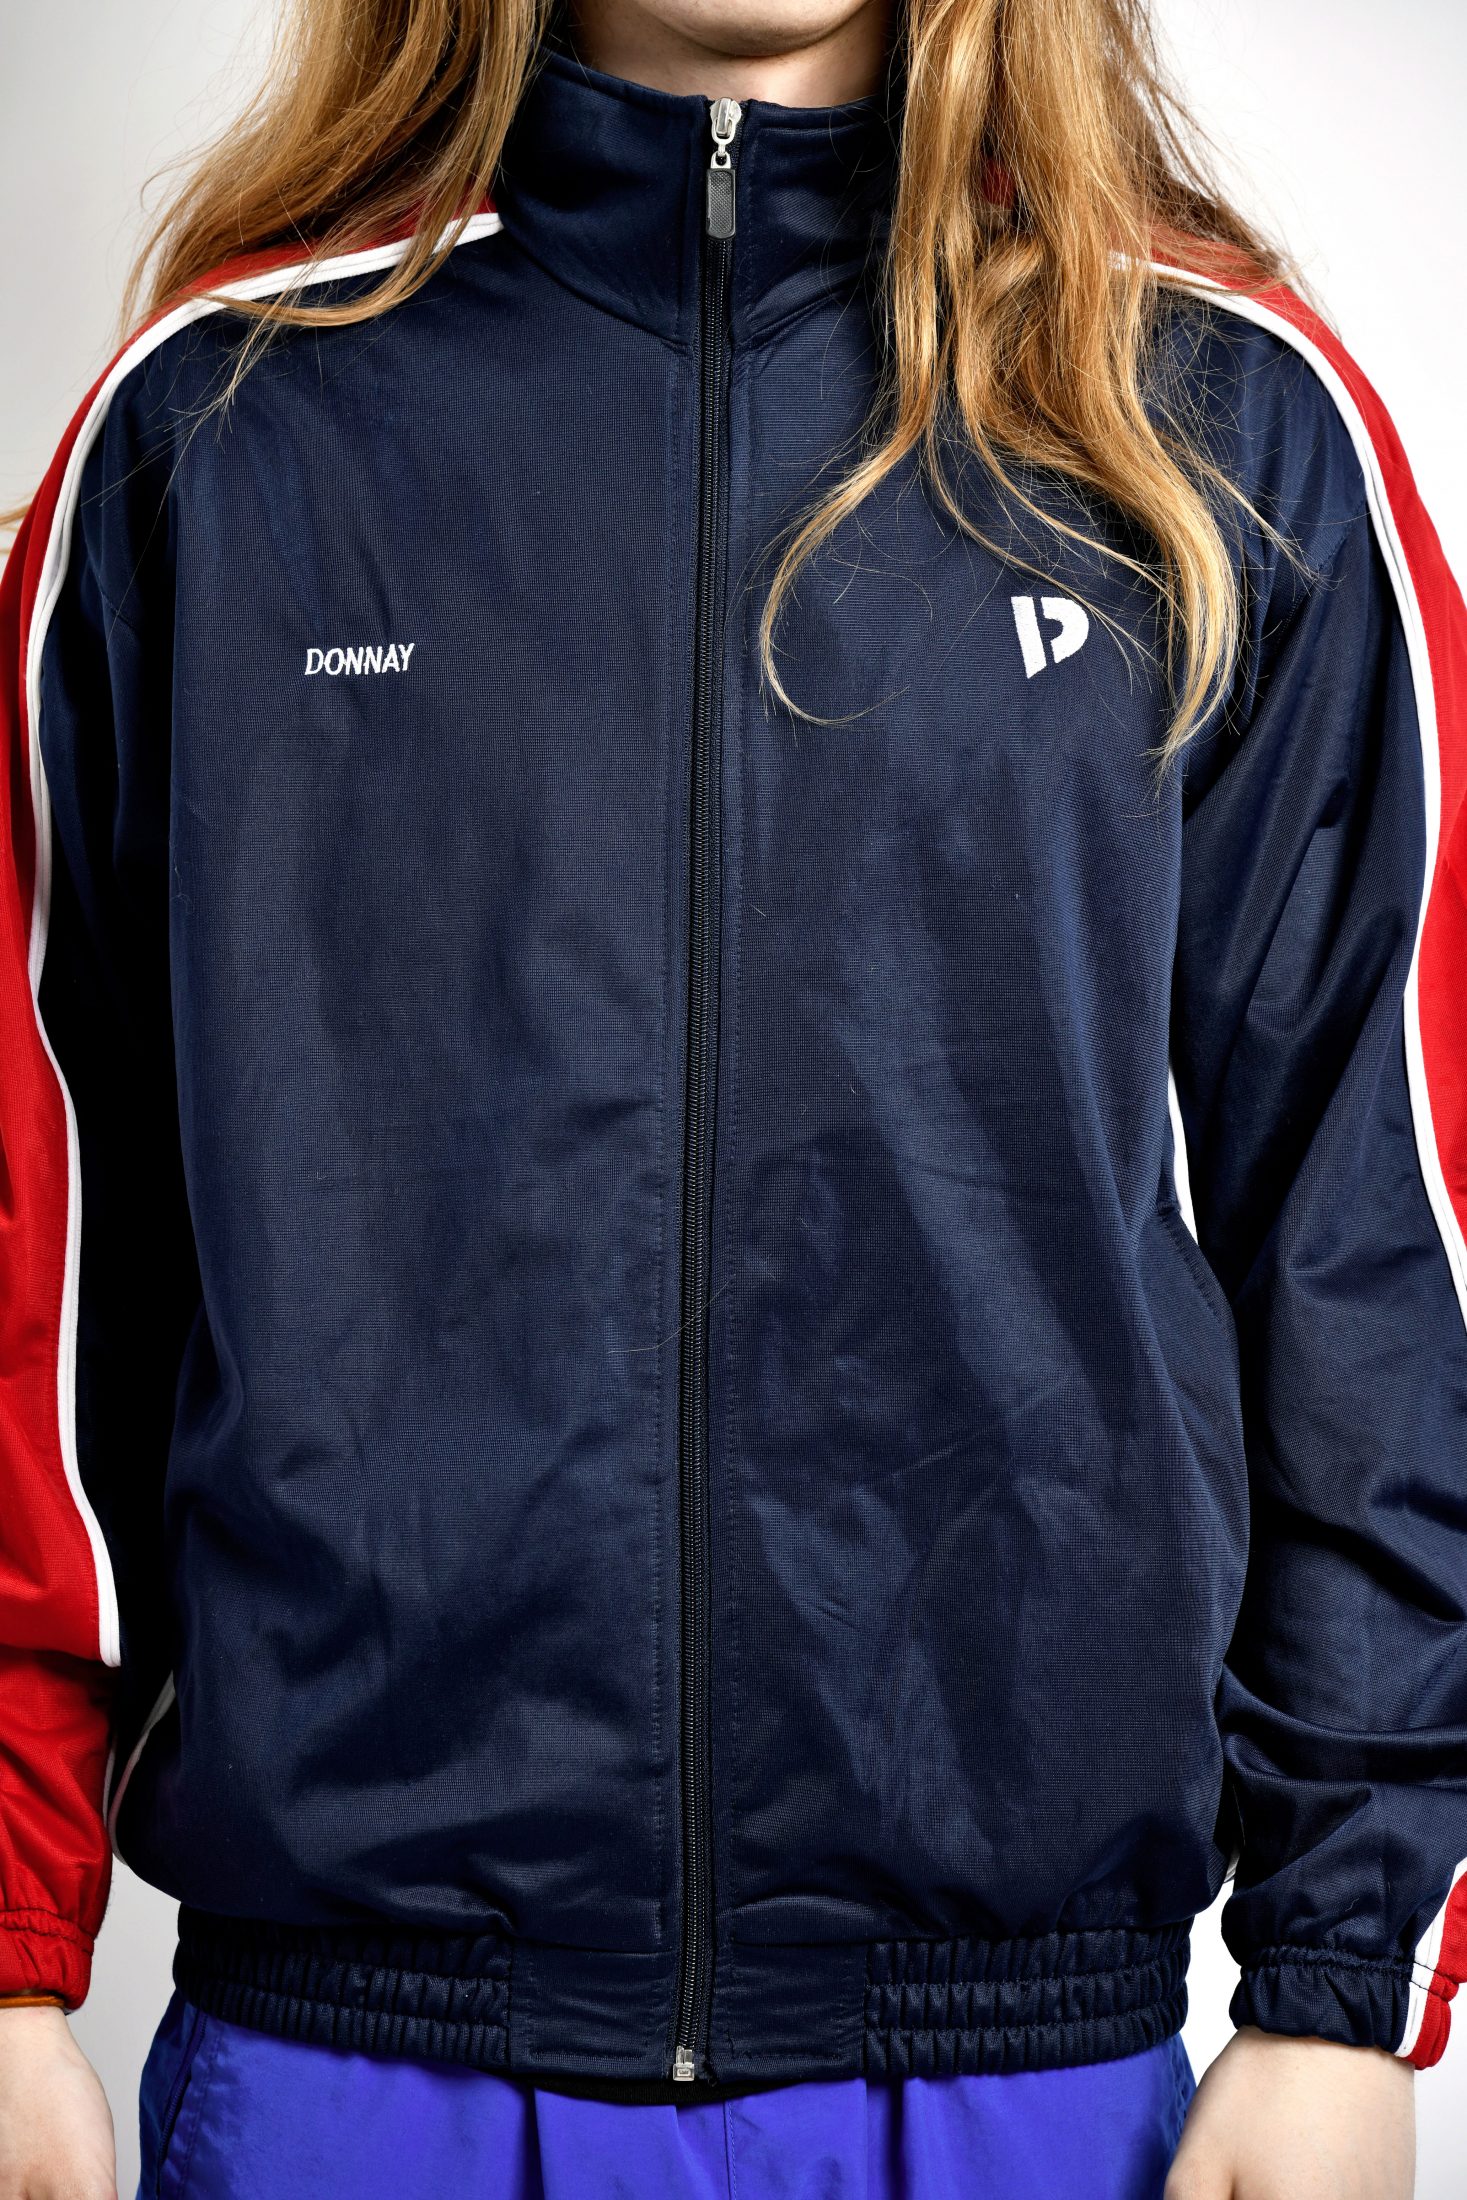 Vintage Y2K sport jacket